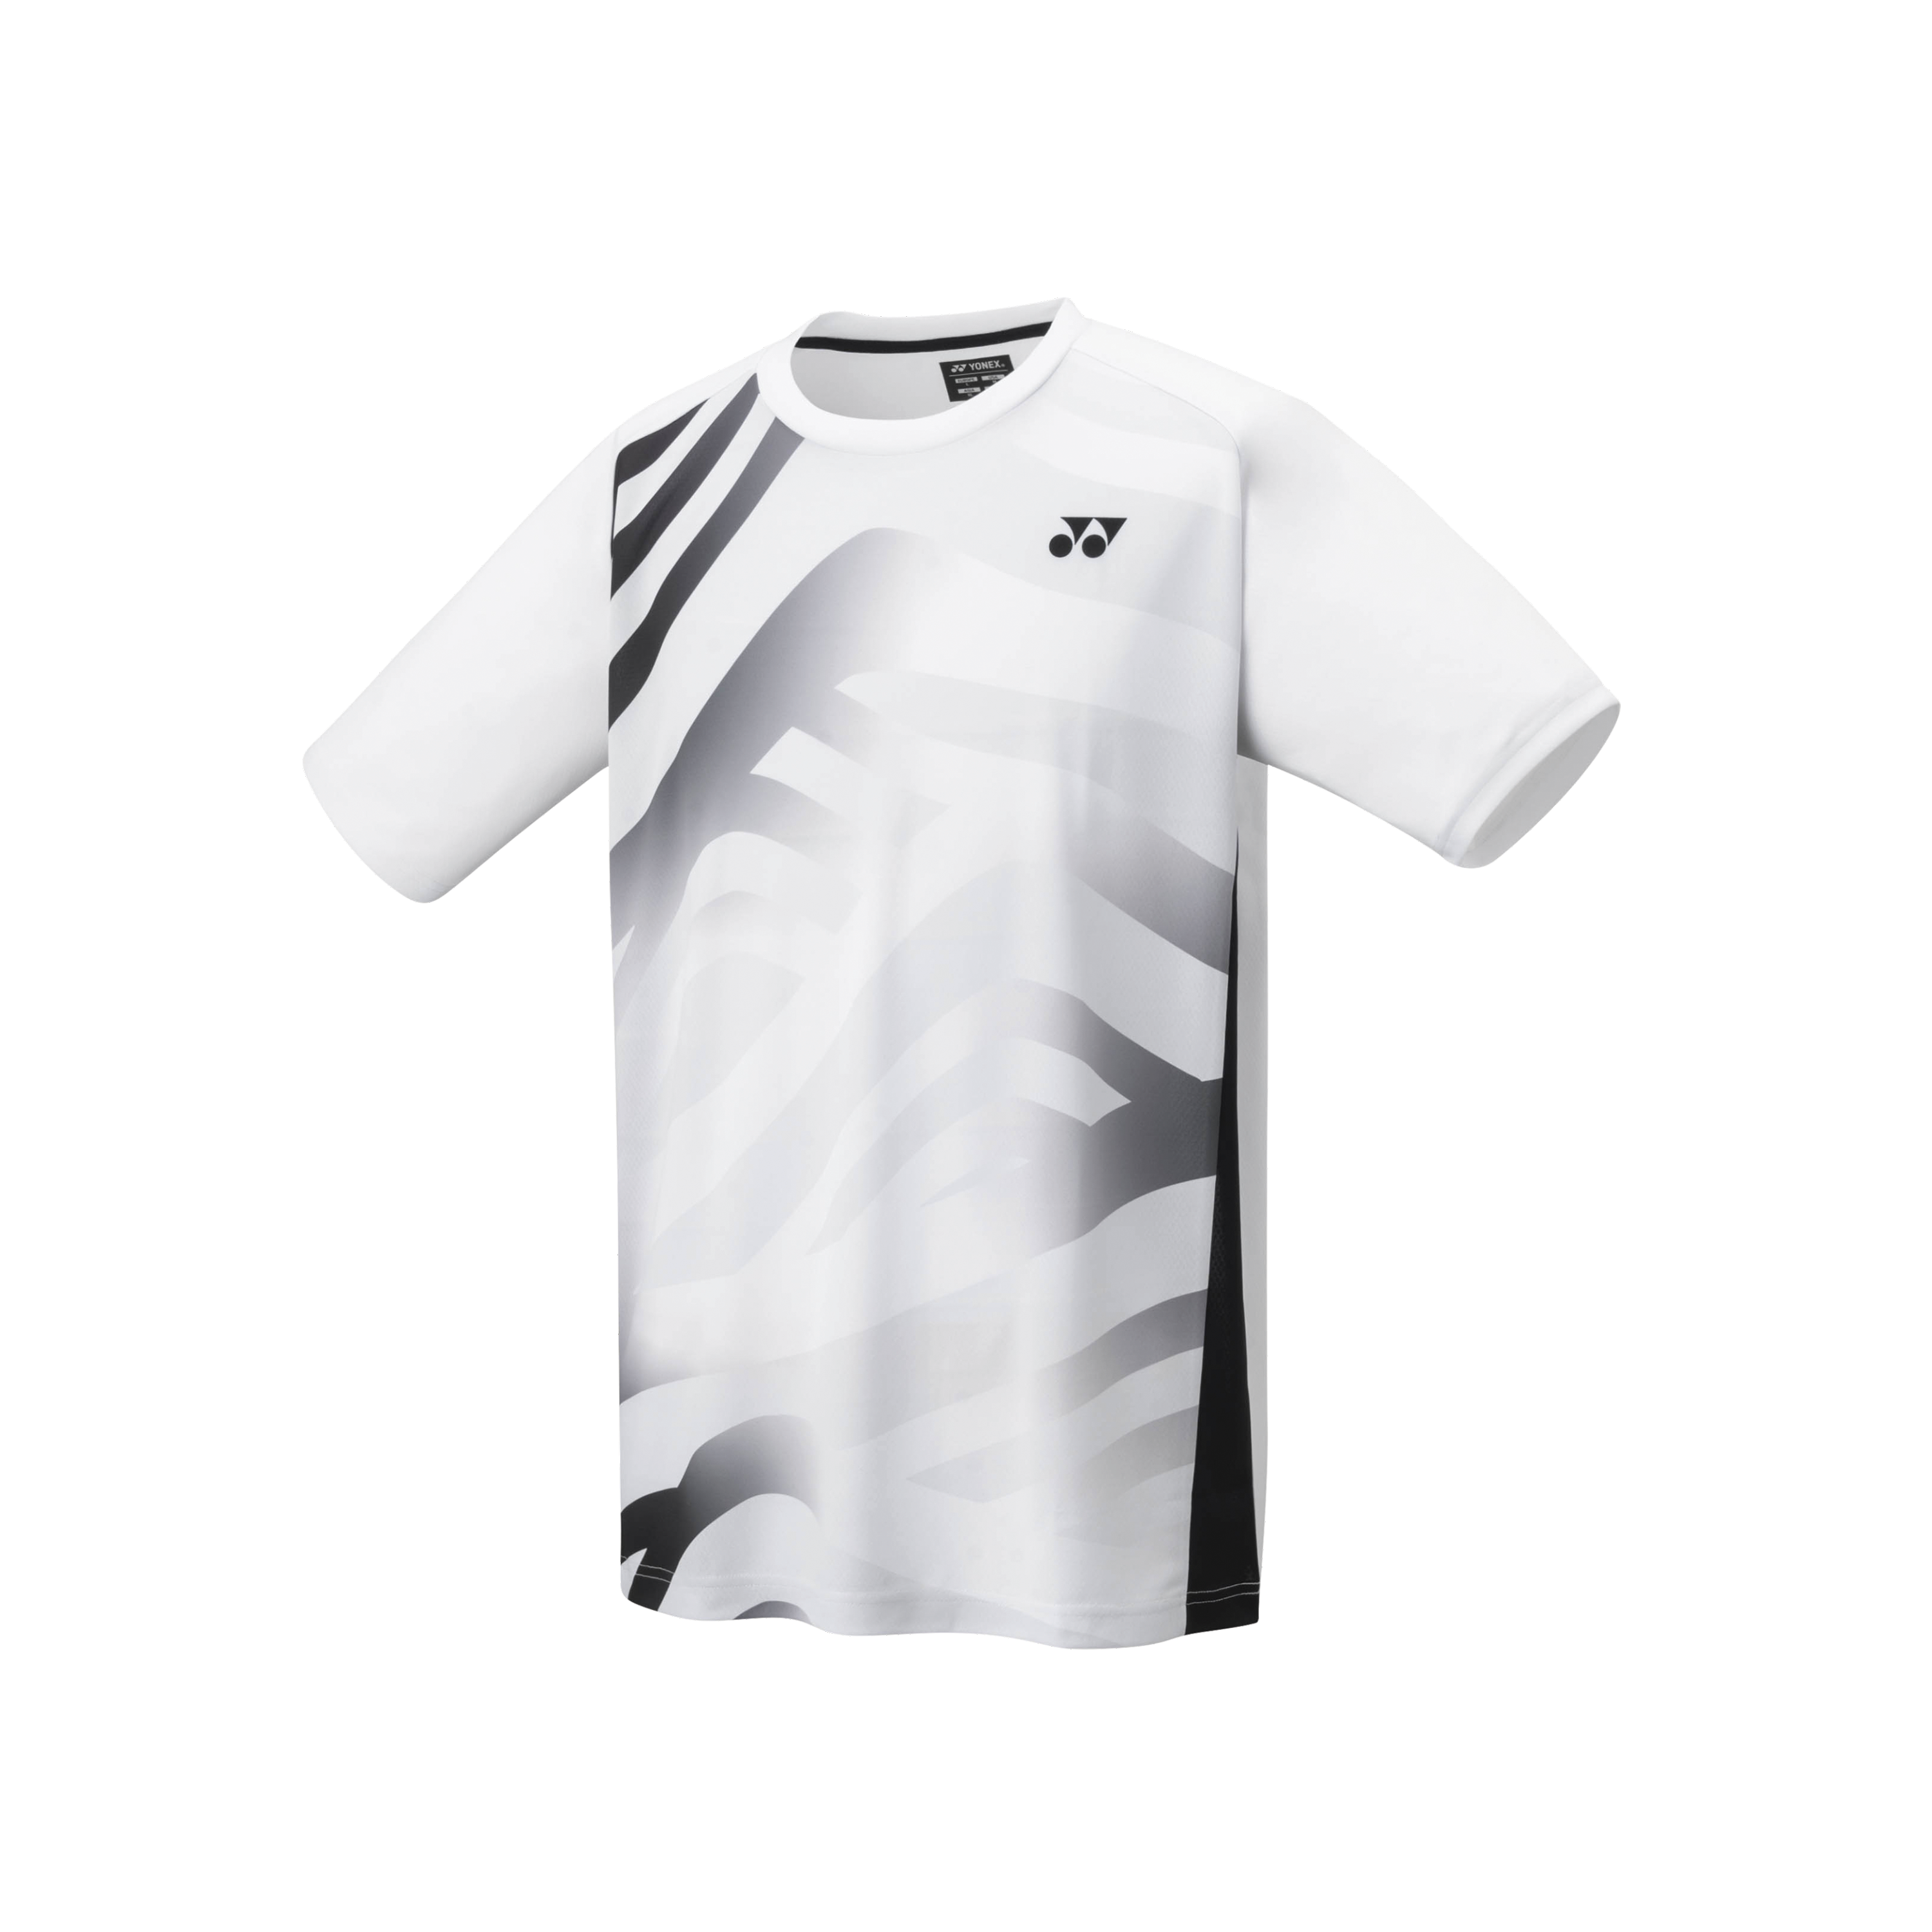 Yonex Badminton/ Tennis Sports Shirt 16692EX White MEN'S